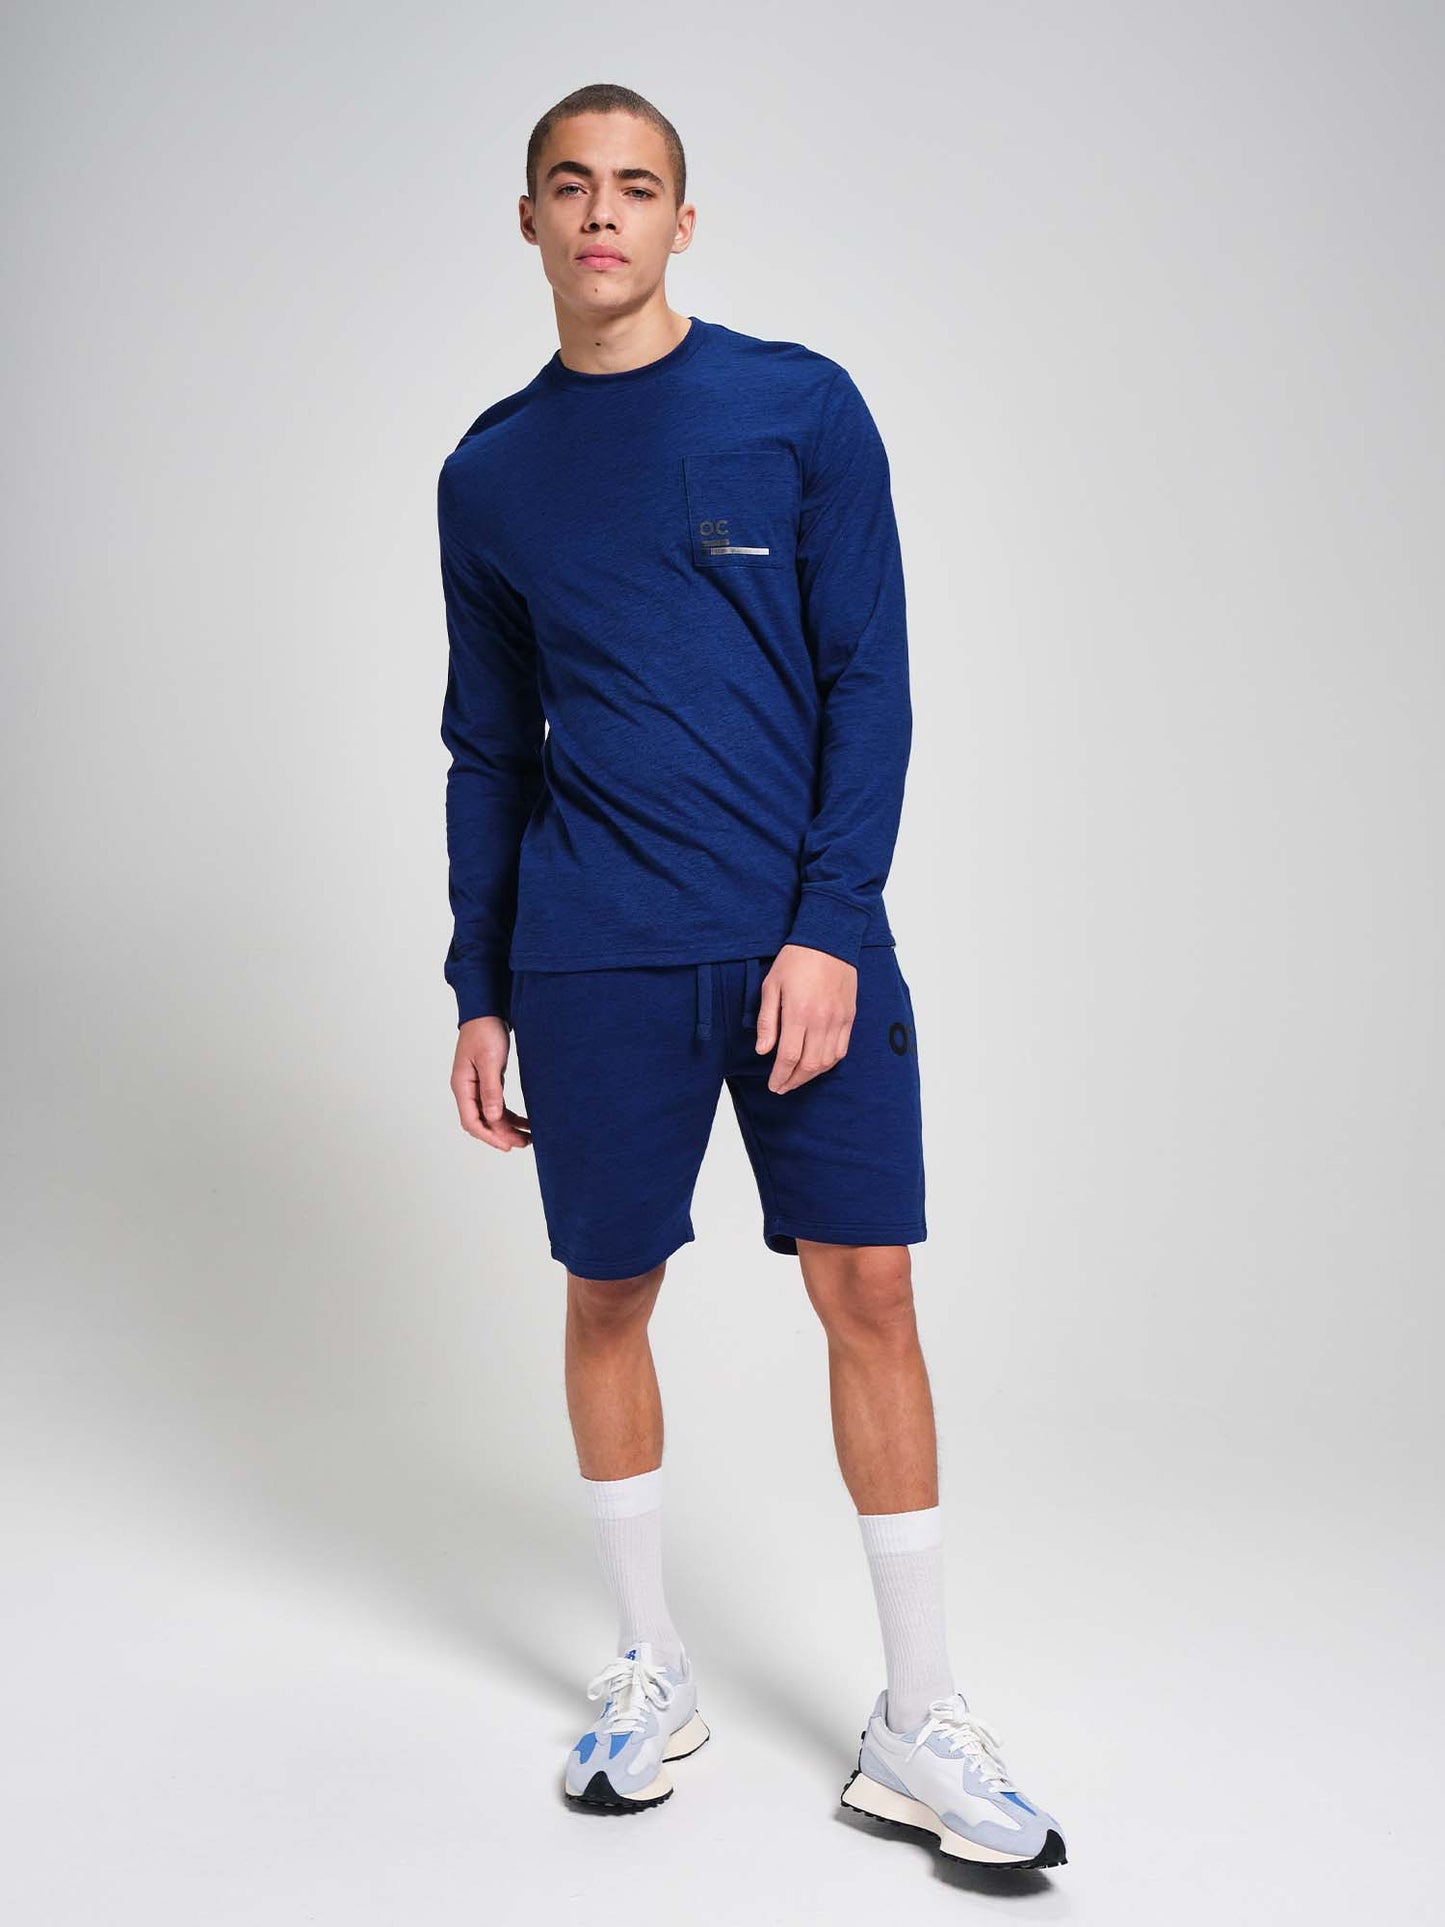 OC. Long Sleeve T-Shirt - Cobalt Blue